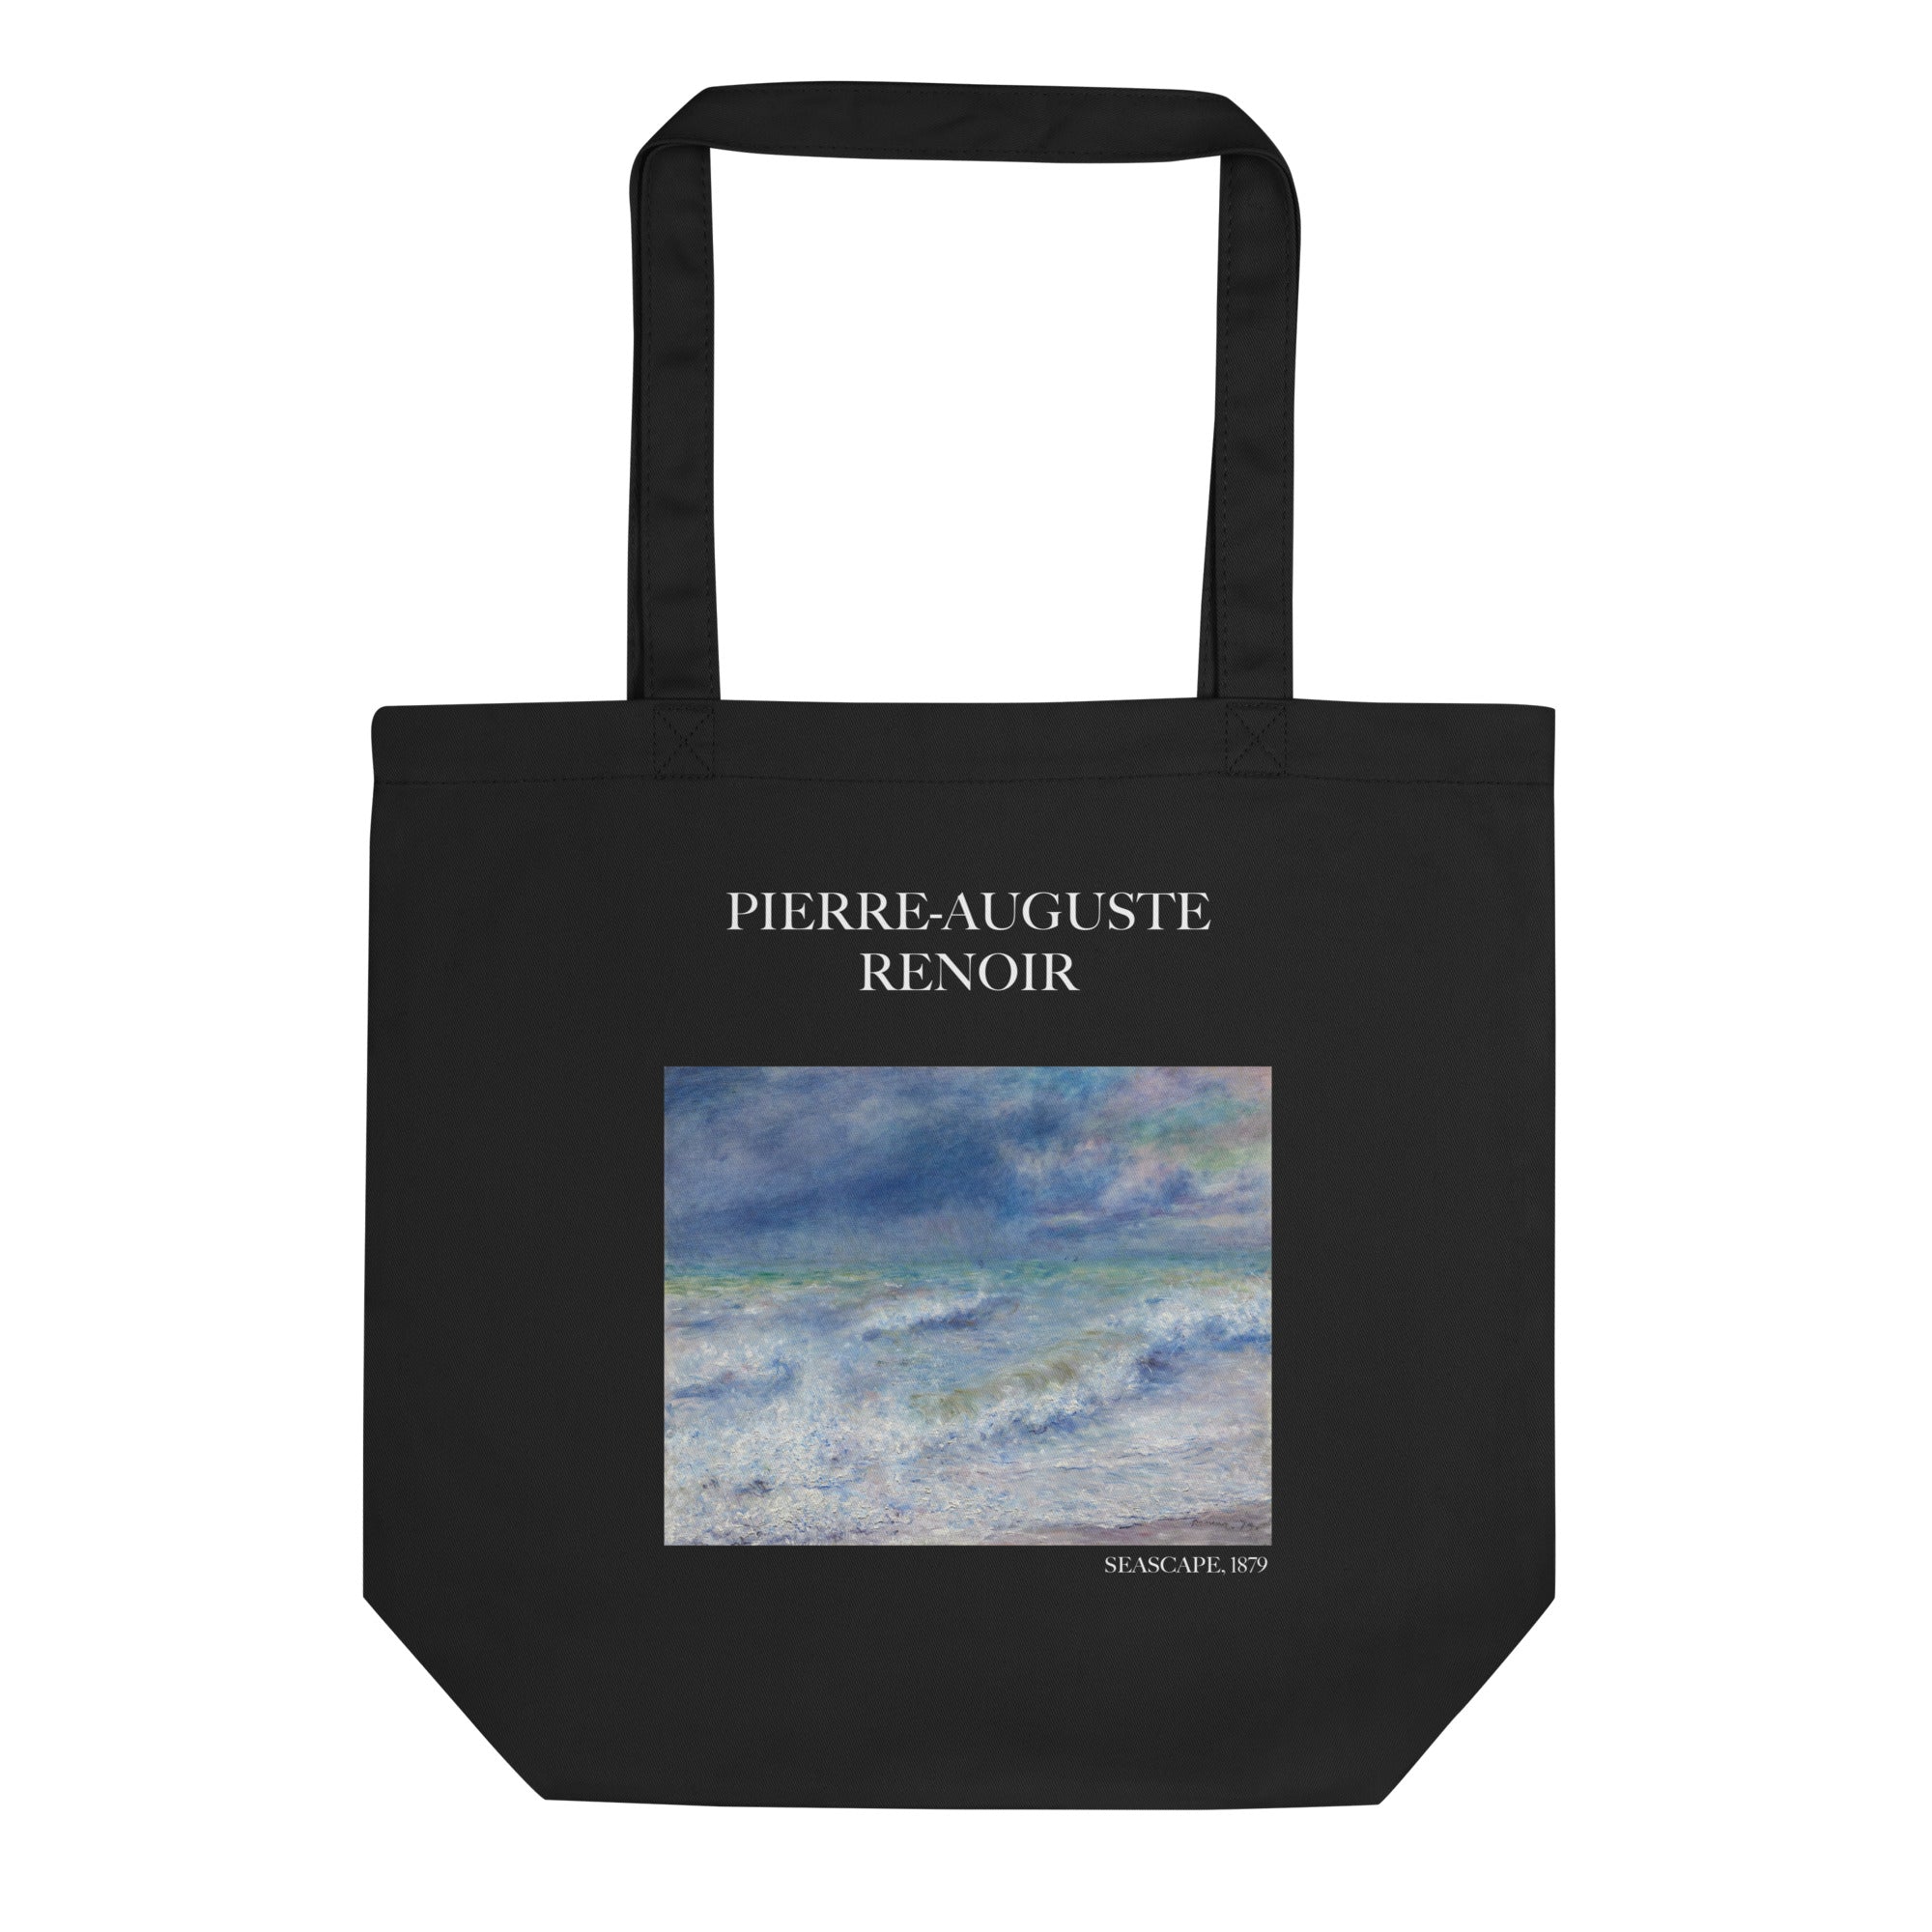 Pierre-Auguste Renoir - Einkaufstasche mit berühmtem Gemälde „Meereslandschaft“ - Umweltfreundliche Kunst-Einkaufstasche